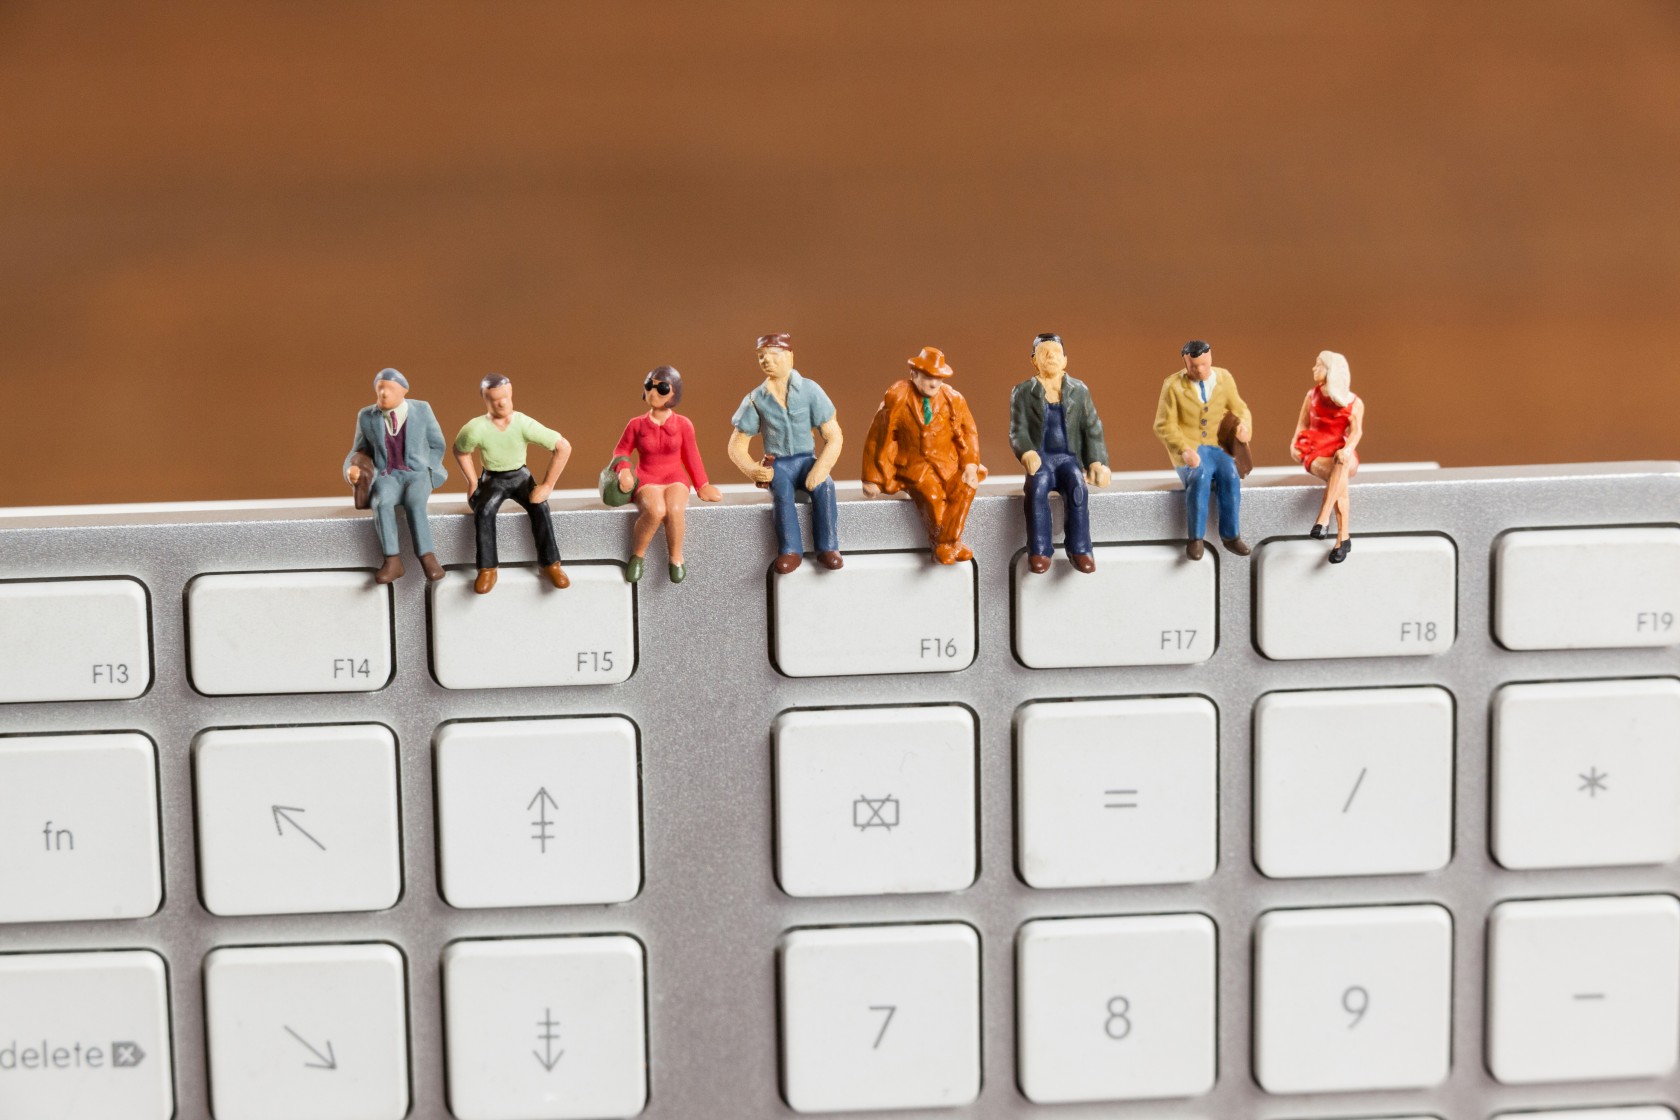 miniature-people-sitting-top-keyboard.jpg